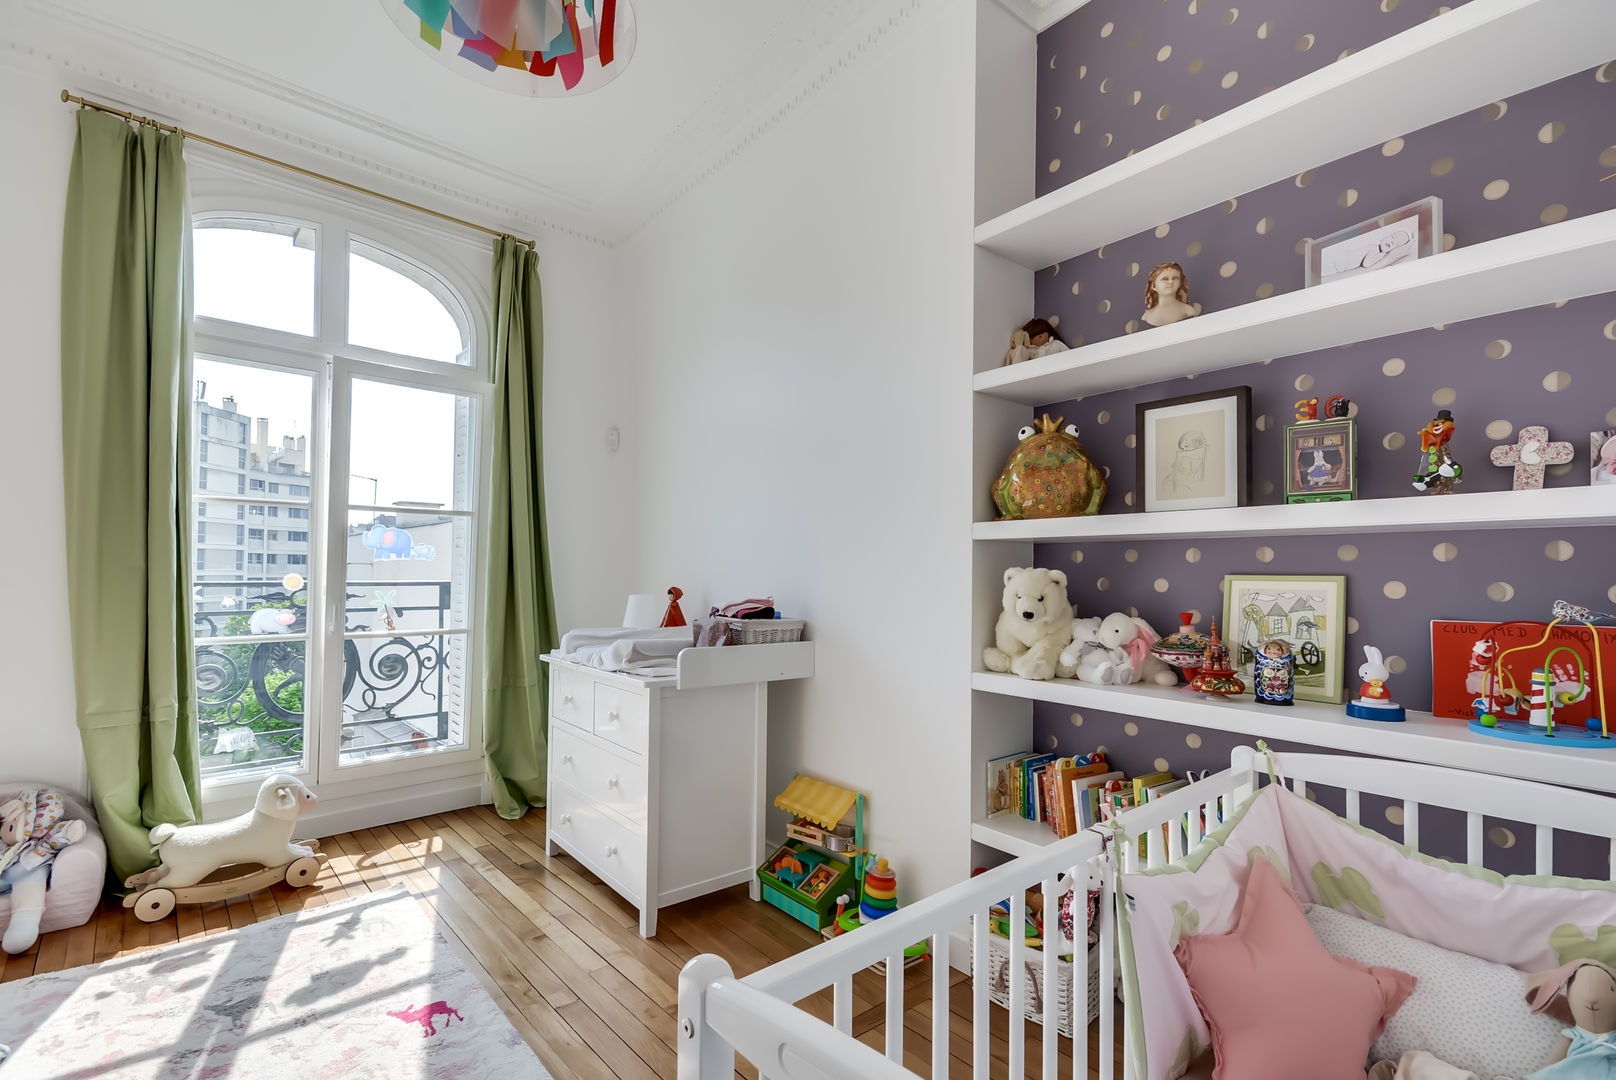 Un appartement haussmanien revisité - Paris 16e, ATELIER FB ATELIER FB Moderne kinderkamers